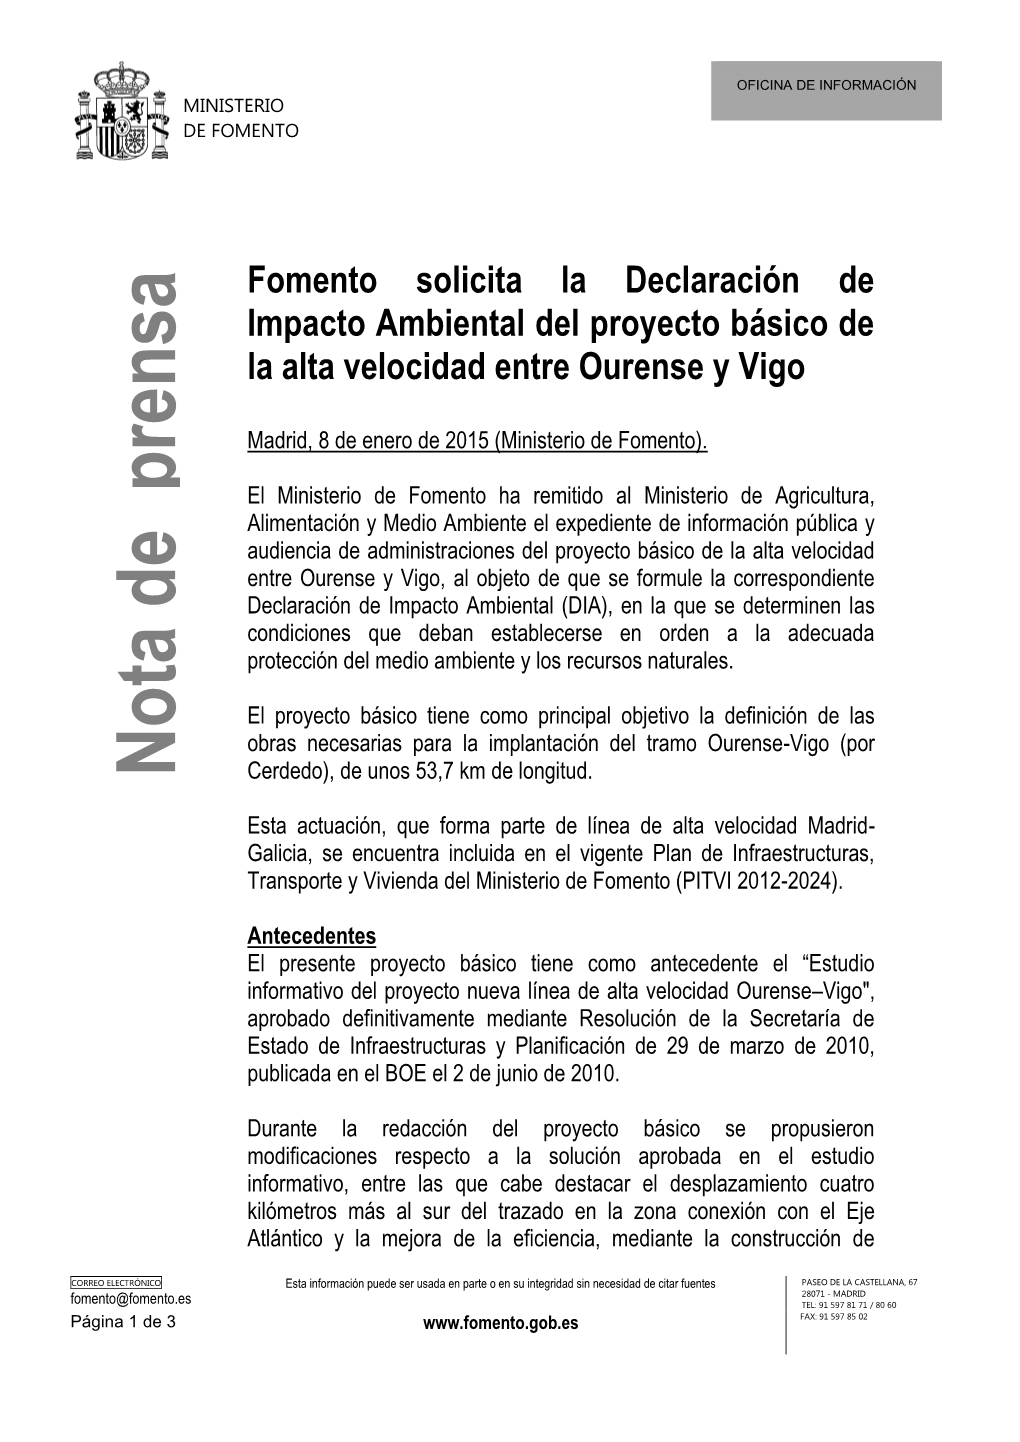 Fomento Solicita La Declaración De Impacto Ambiental Del Proyecto Básico De La Alta Velocidad Entre Ourense Y Vigo